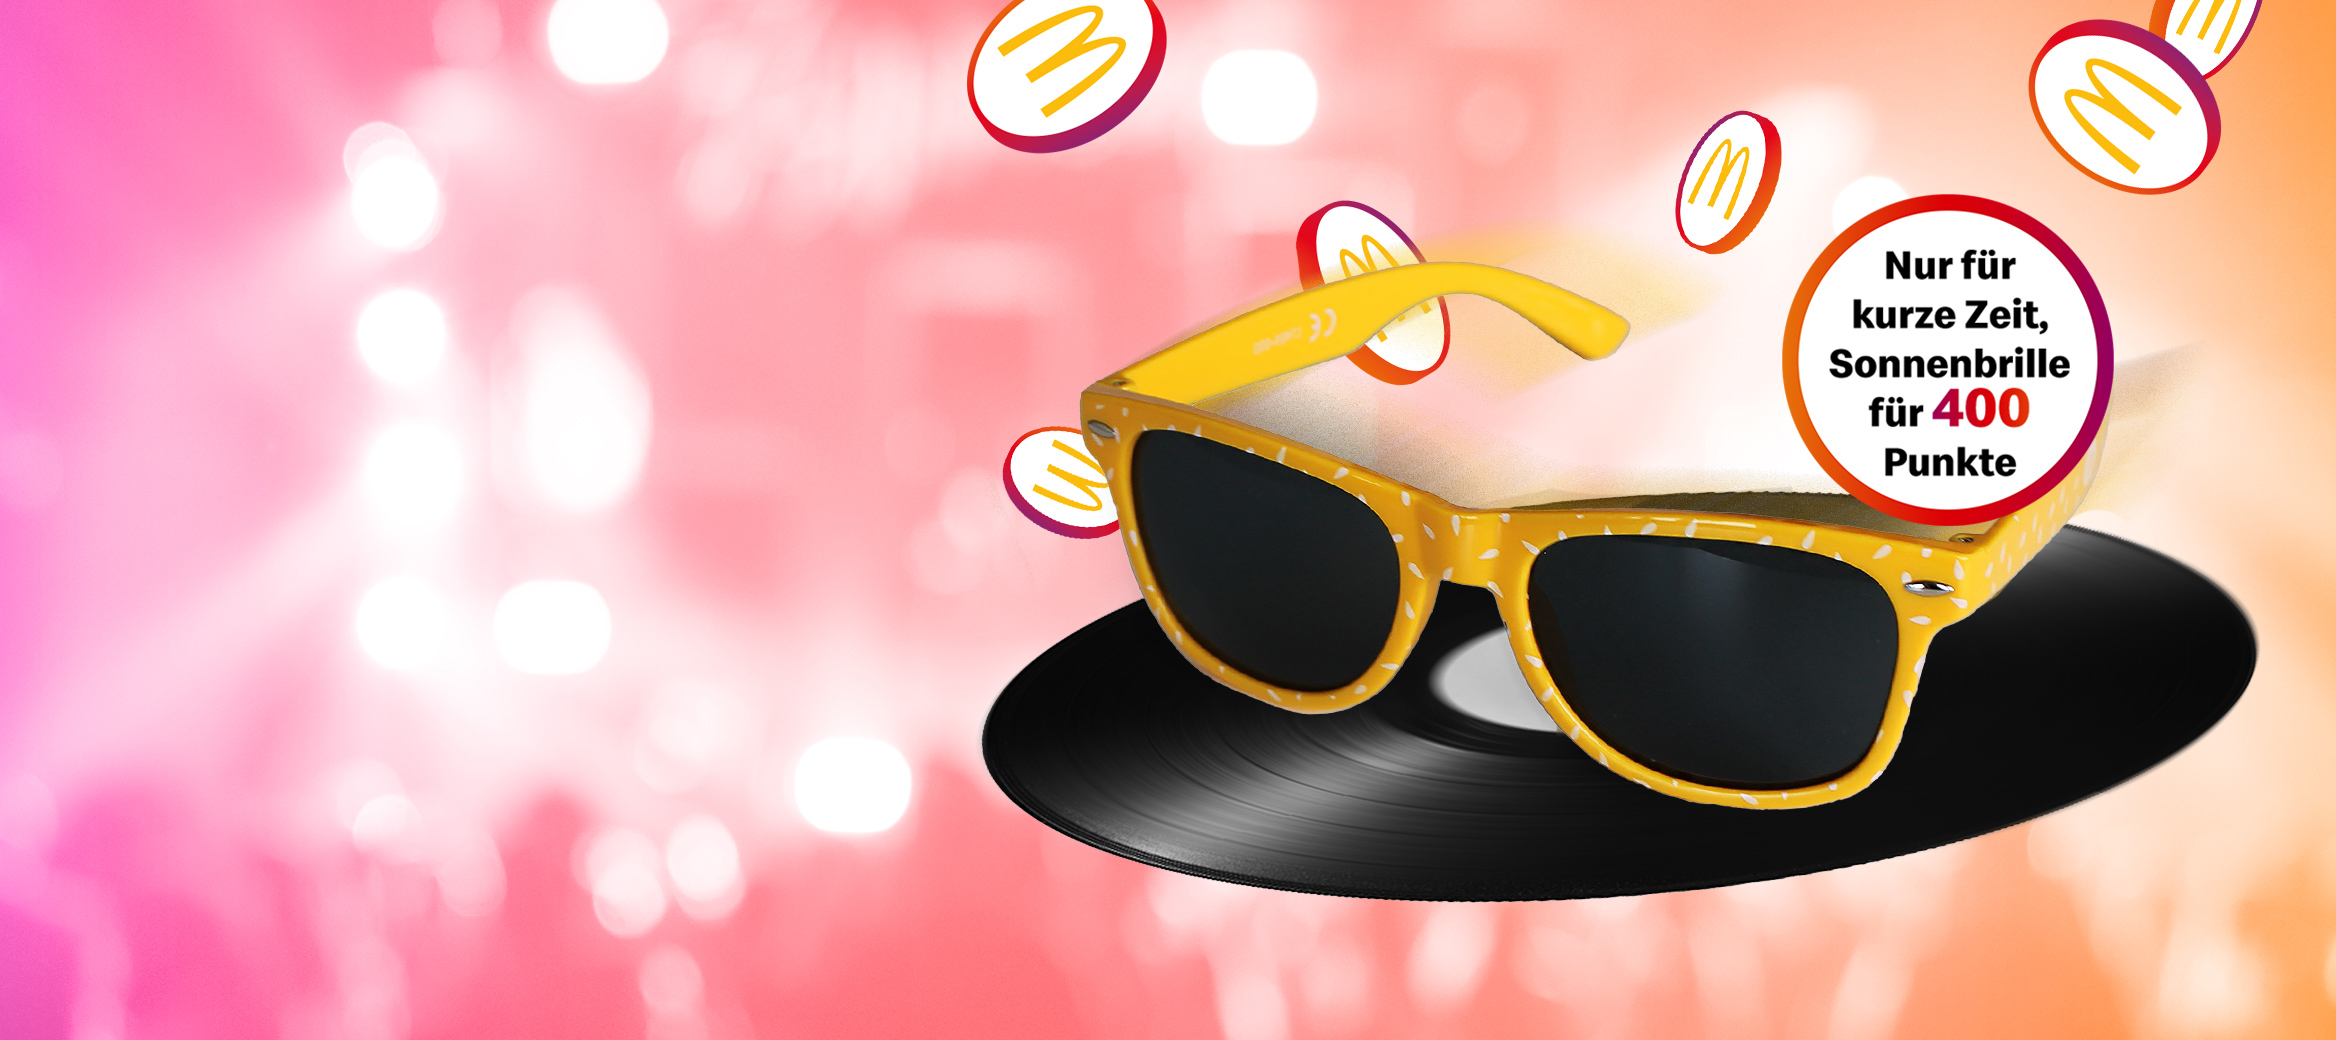 McDonald’s Sonnenbrille mit Hinweis-Störer „Nur für kurze Zeit, Sonnenbrille für 400 Punkte“